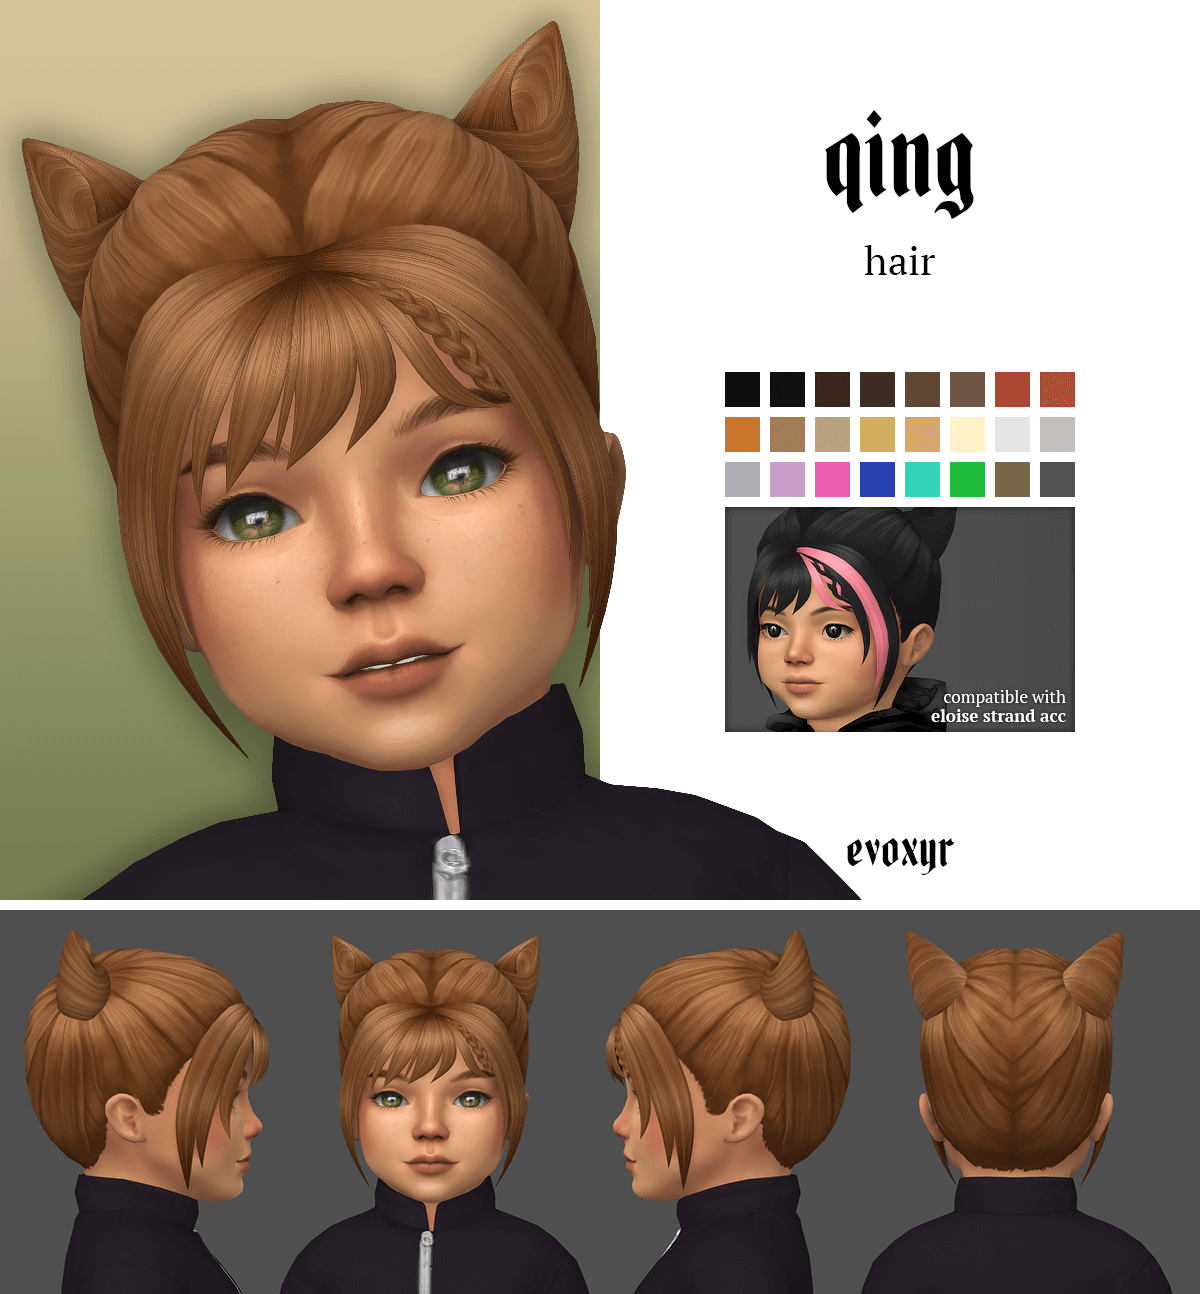 The Sims 4 Cc Toddler Hair Maxis Match